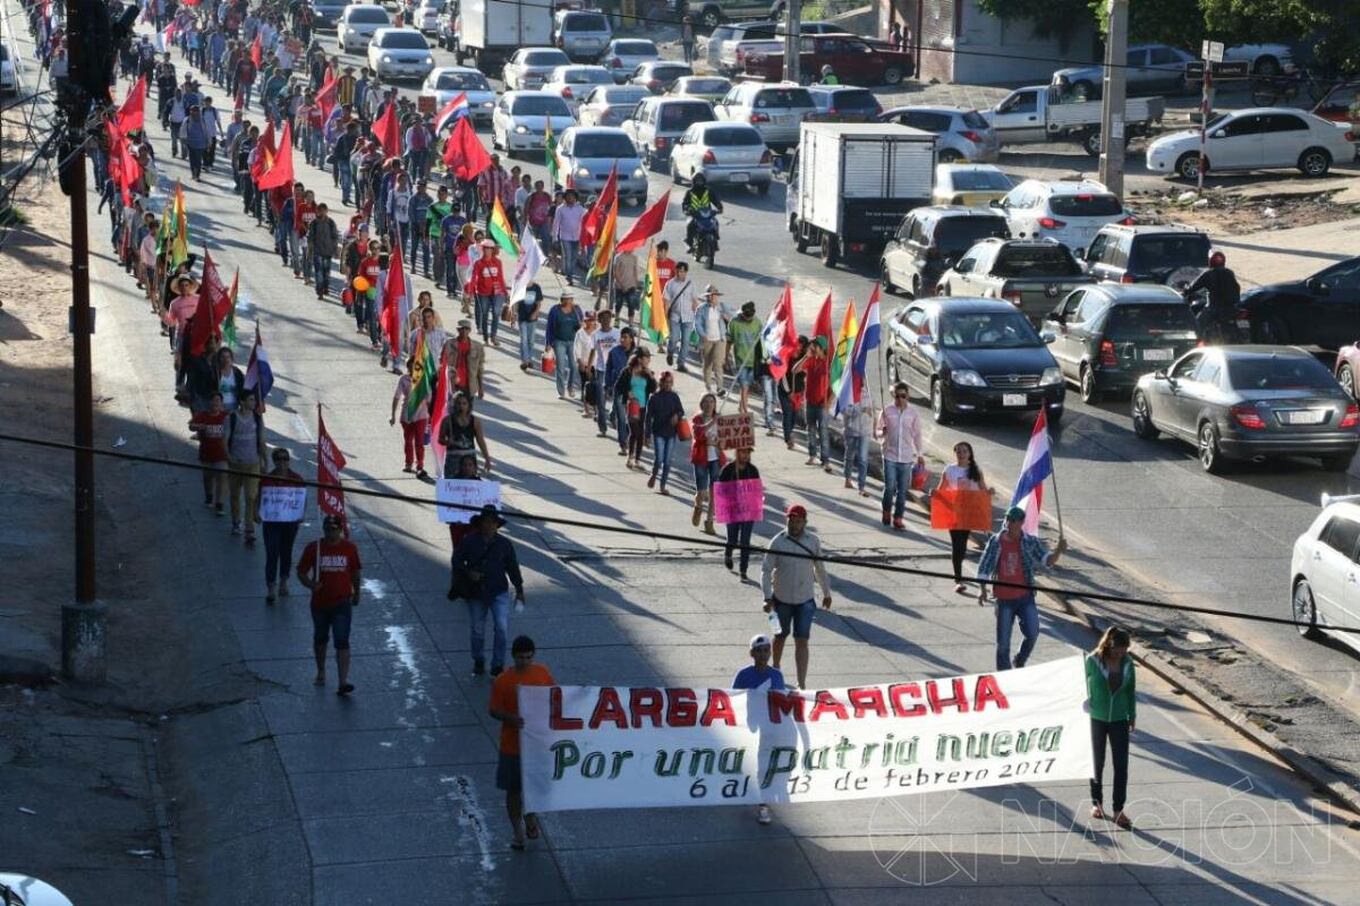 Los campesinos marchan para repudiar el plan de reelección presidencial, impulsado por algunos sectores políticos.